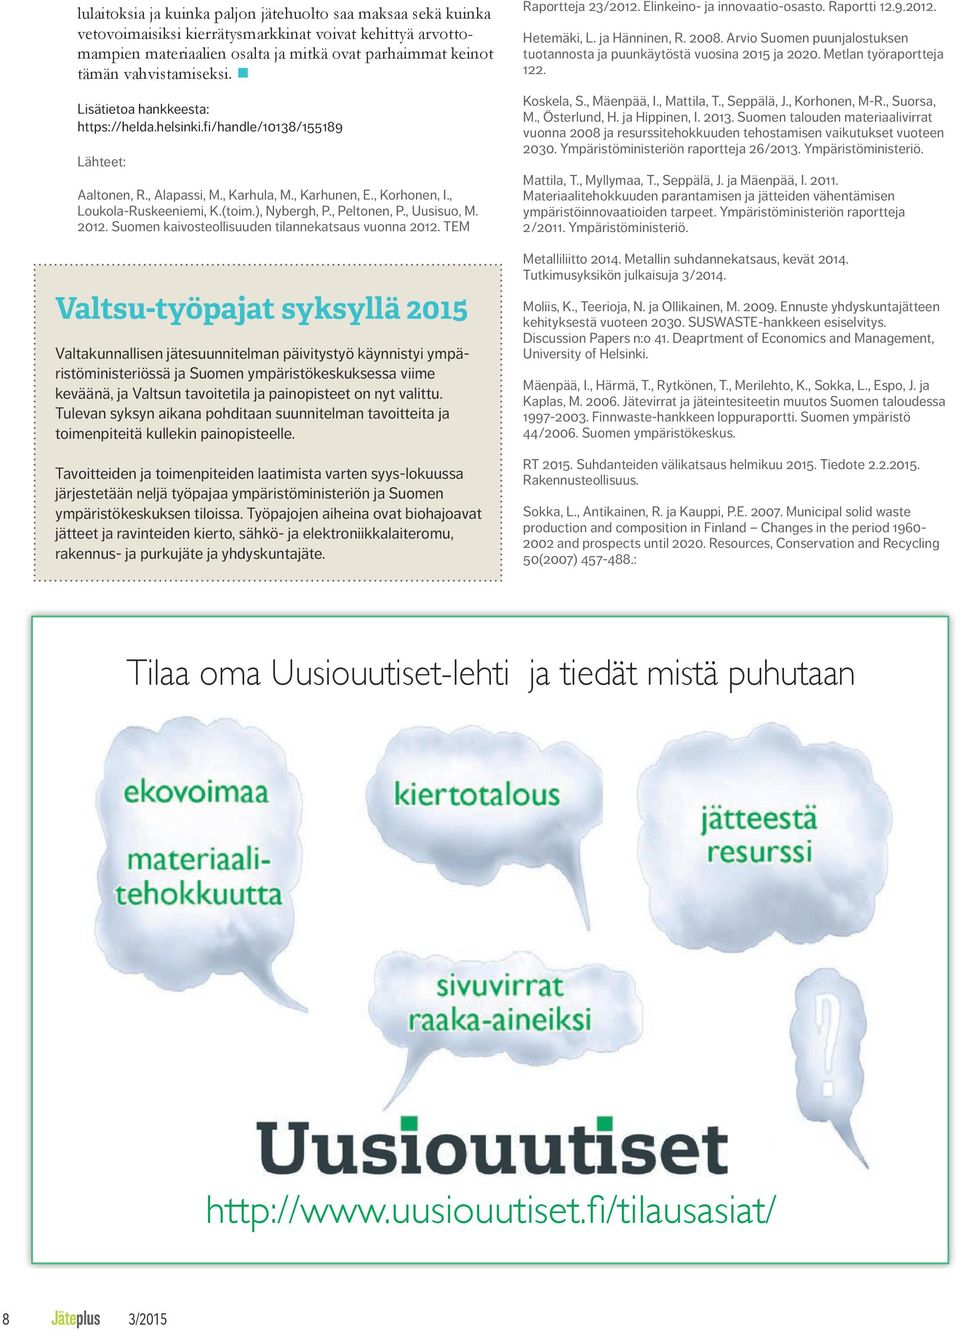 ), Nybergh, P., Peltonen, P., Uusisuo, M. 2012. Suomen kaivosteollisuuden tilannekatsaus vuonna 2012.